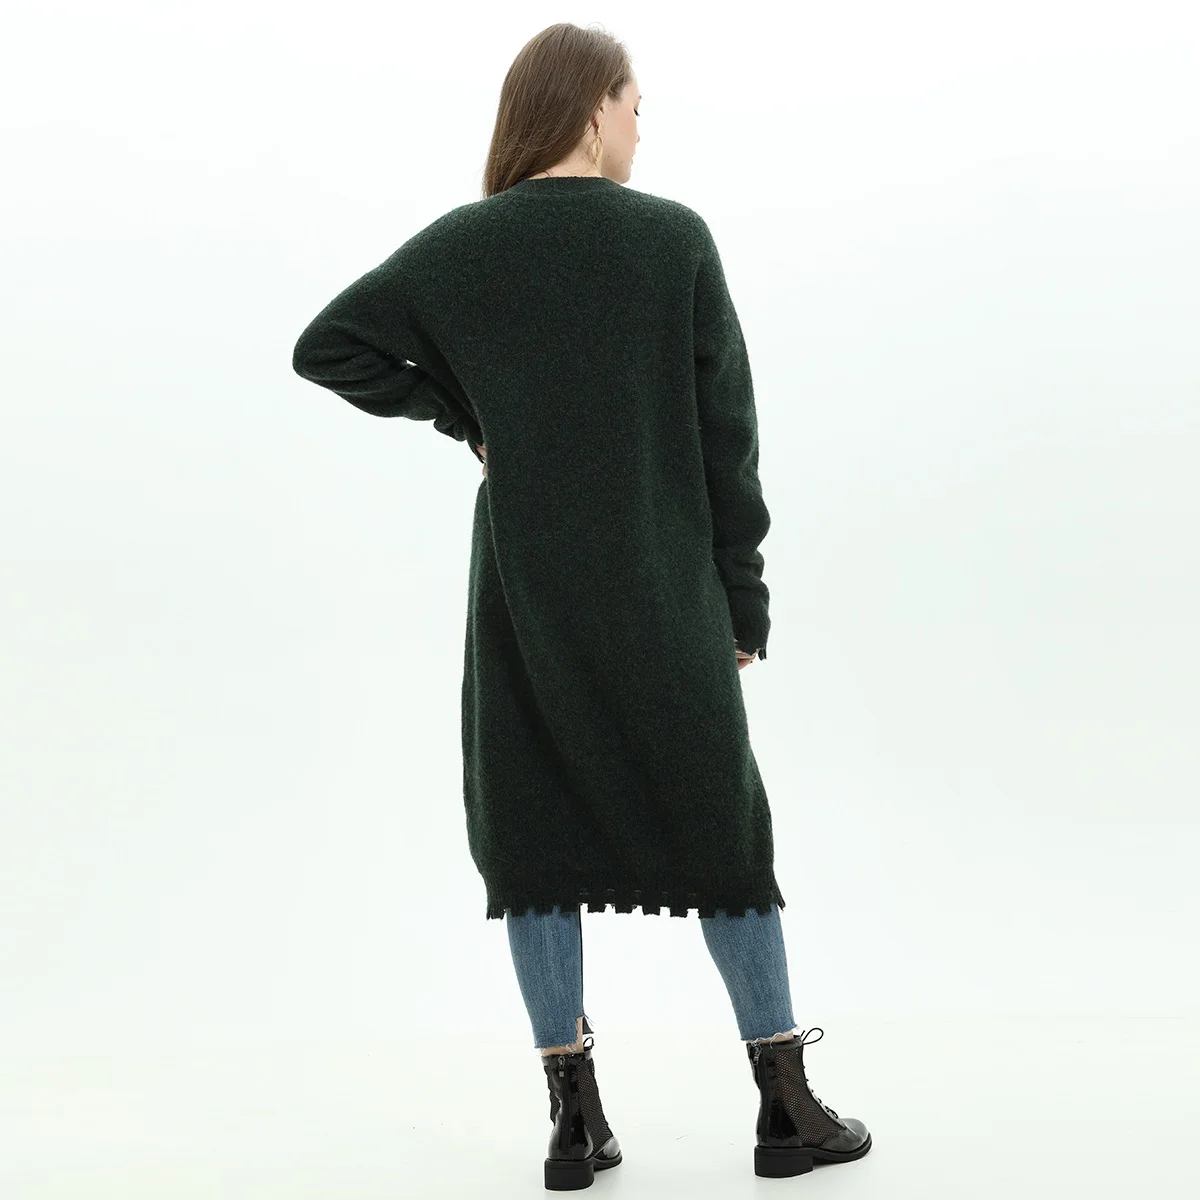 2020 оптовая продажа; Модное популярное рекомендуем в винтажном стиле колледж свитер для повседневной носки женские длинный кардиган рабочая одежда пальто-свитер